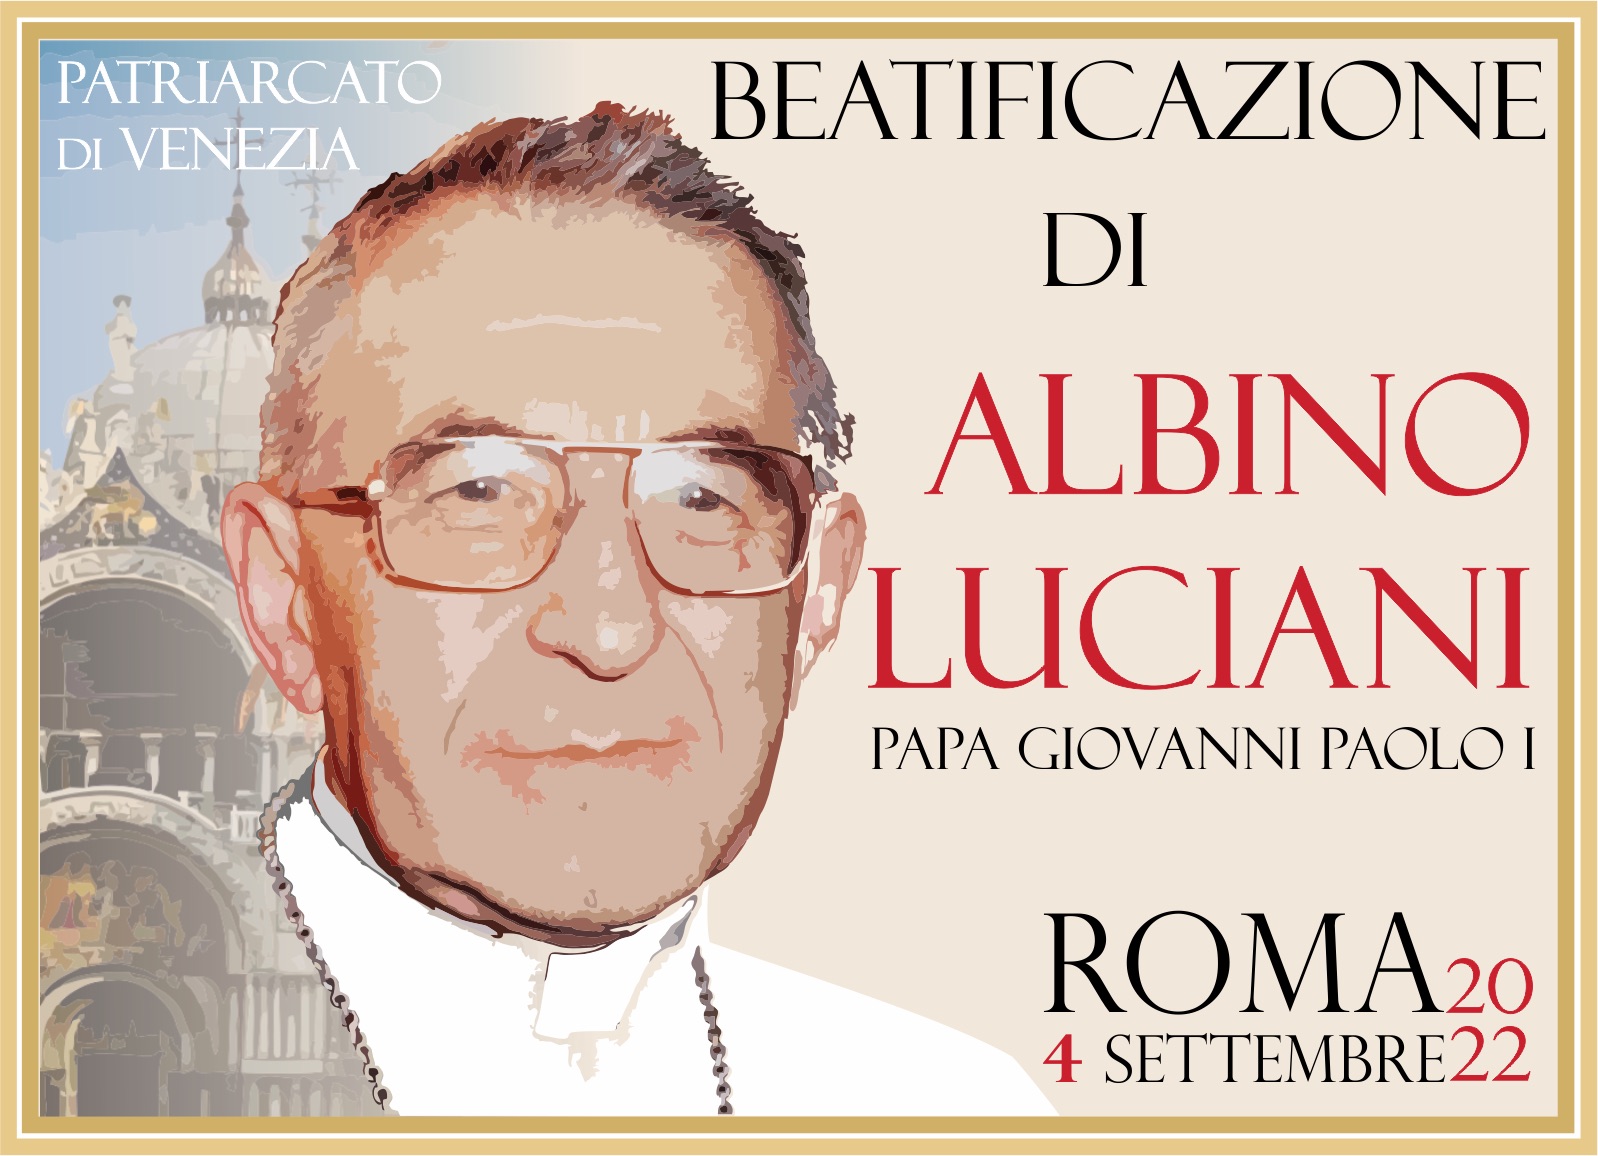 Pellegrinaggio diocesano a Roma per la beatificazione di Albino Luciani:  ultimi giorni per iscriversi